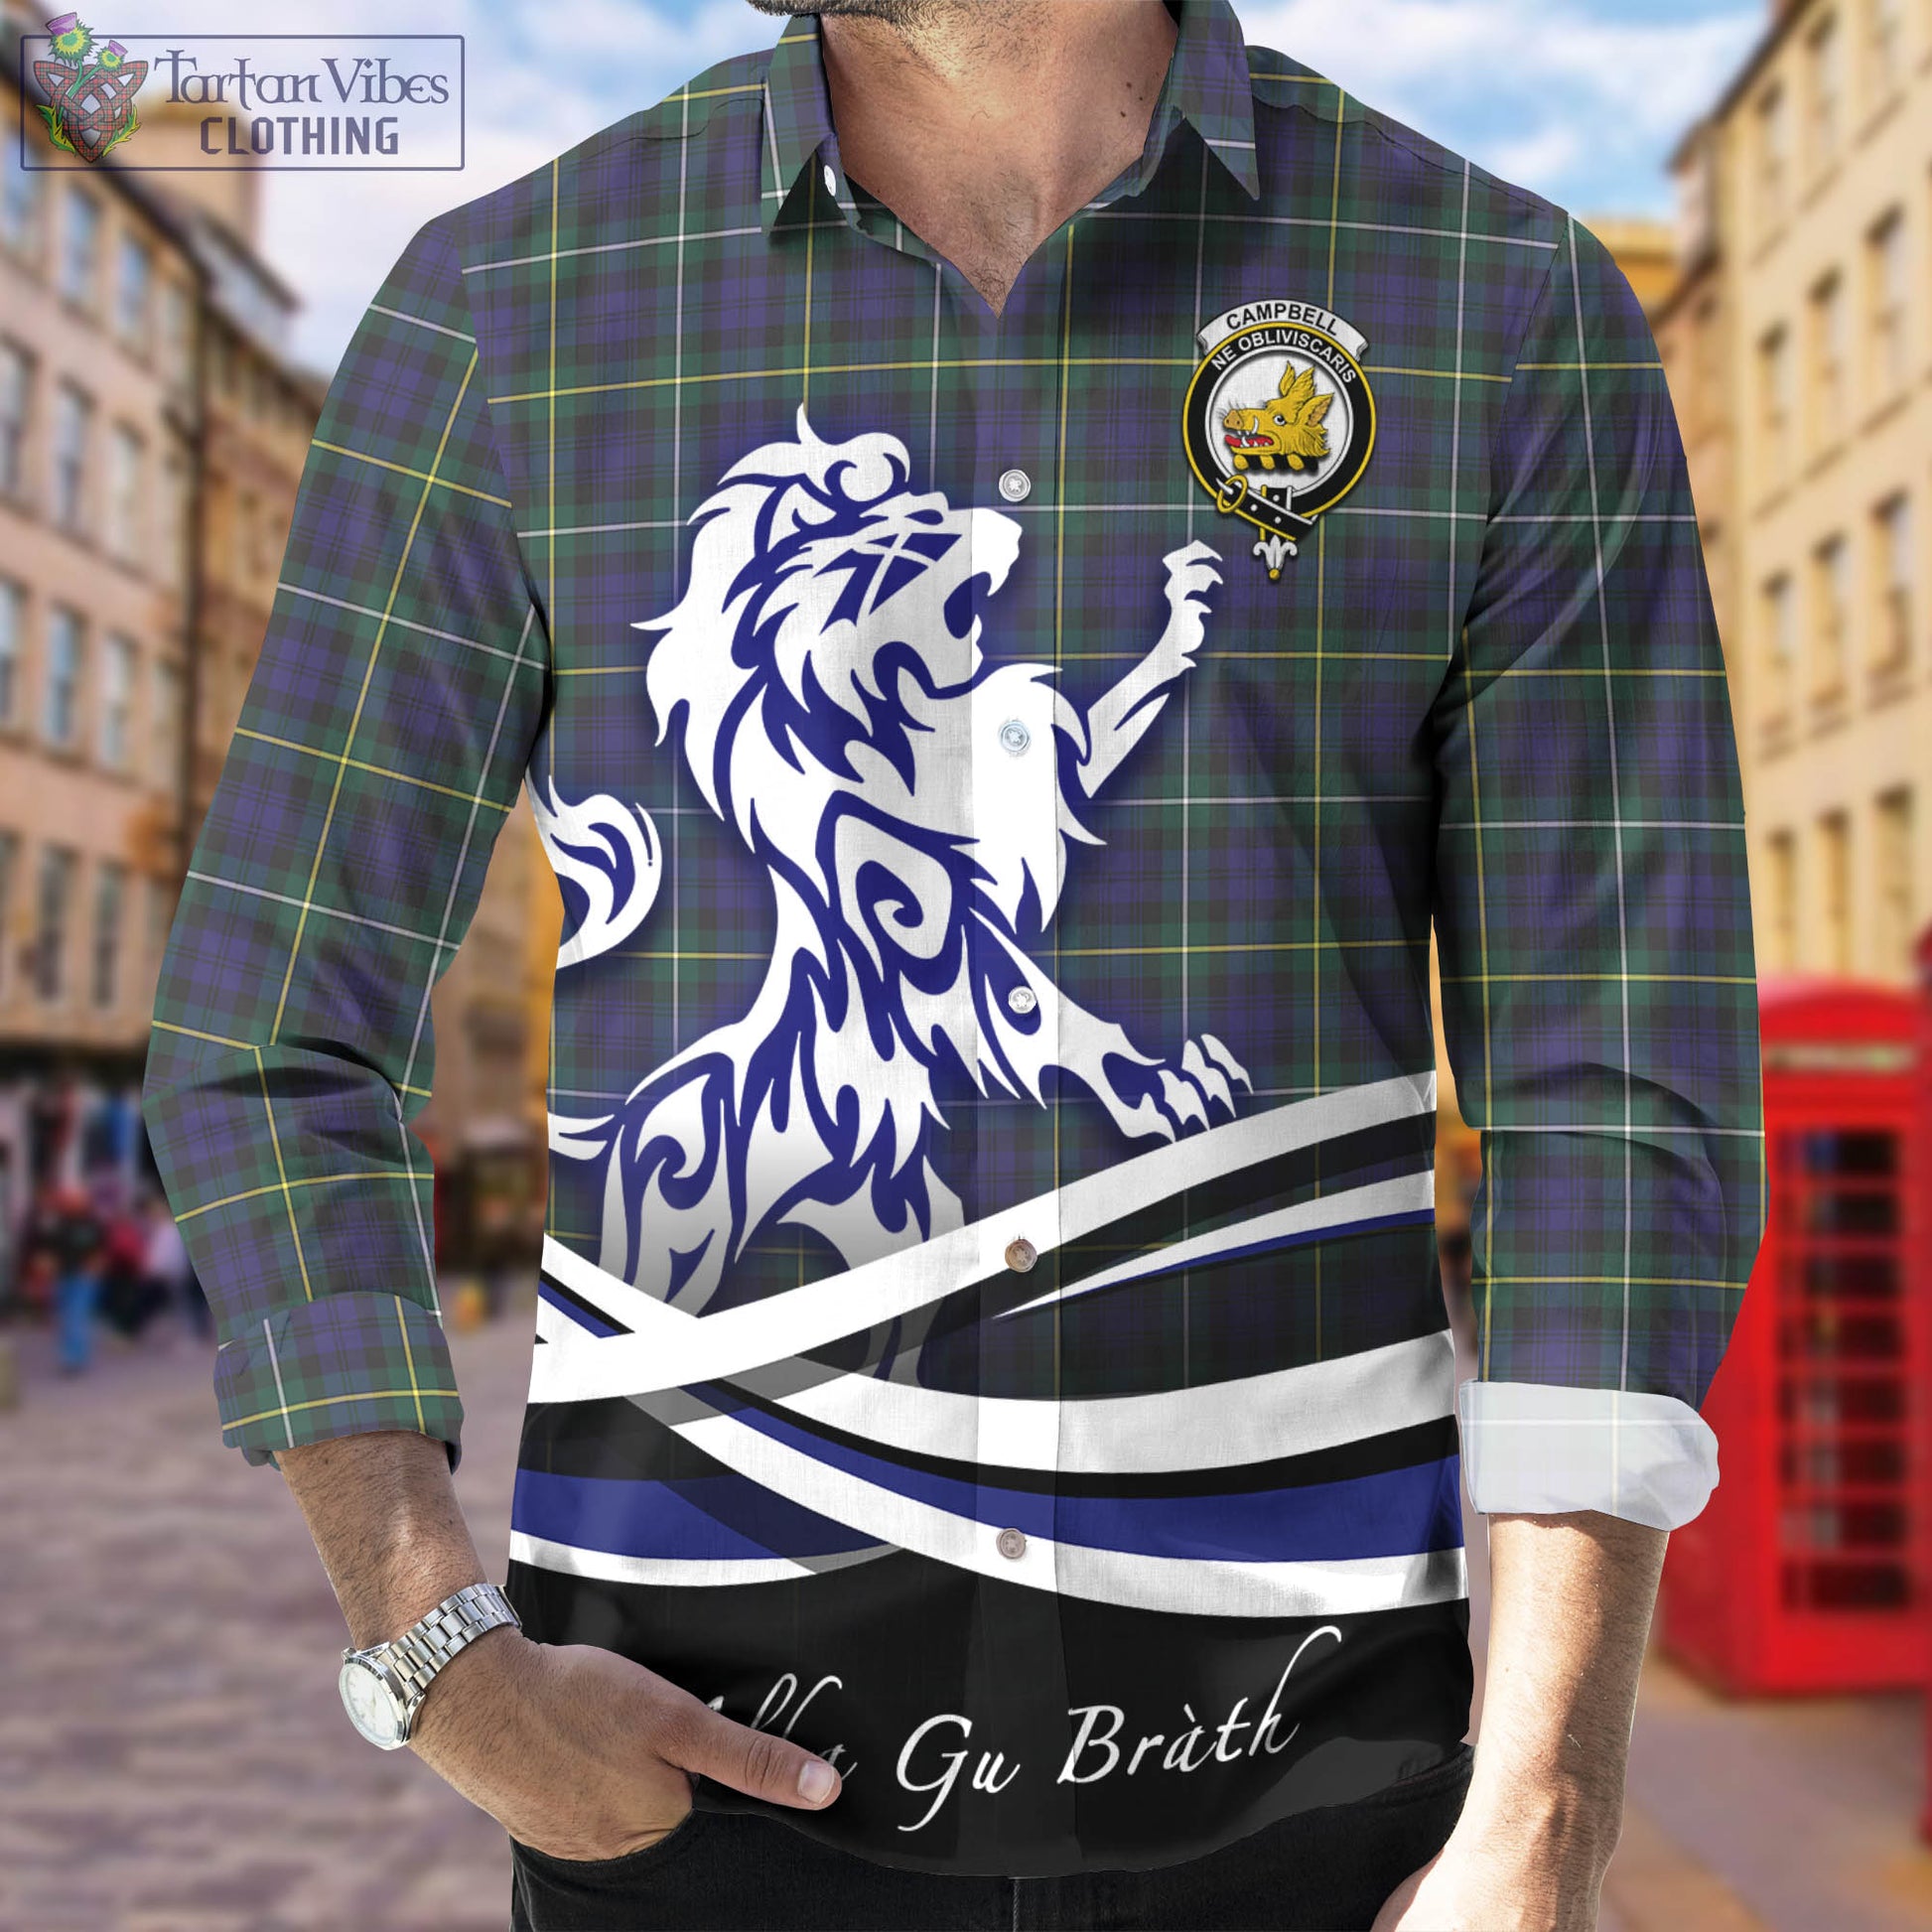 campbell-argyll-modern-tartan-long-sleeve-button-up-shirt-with-alba-gu-brath-regal-lion-emblem